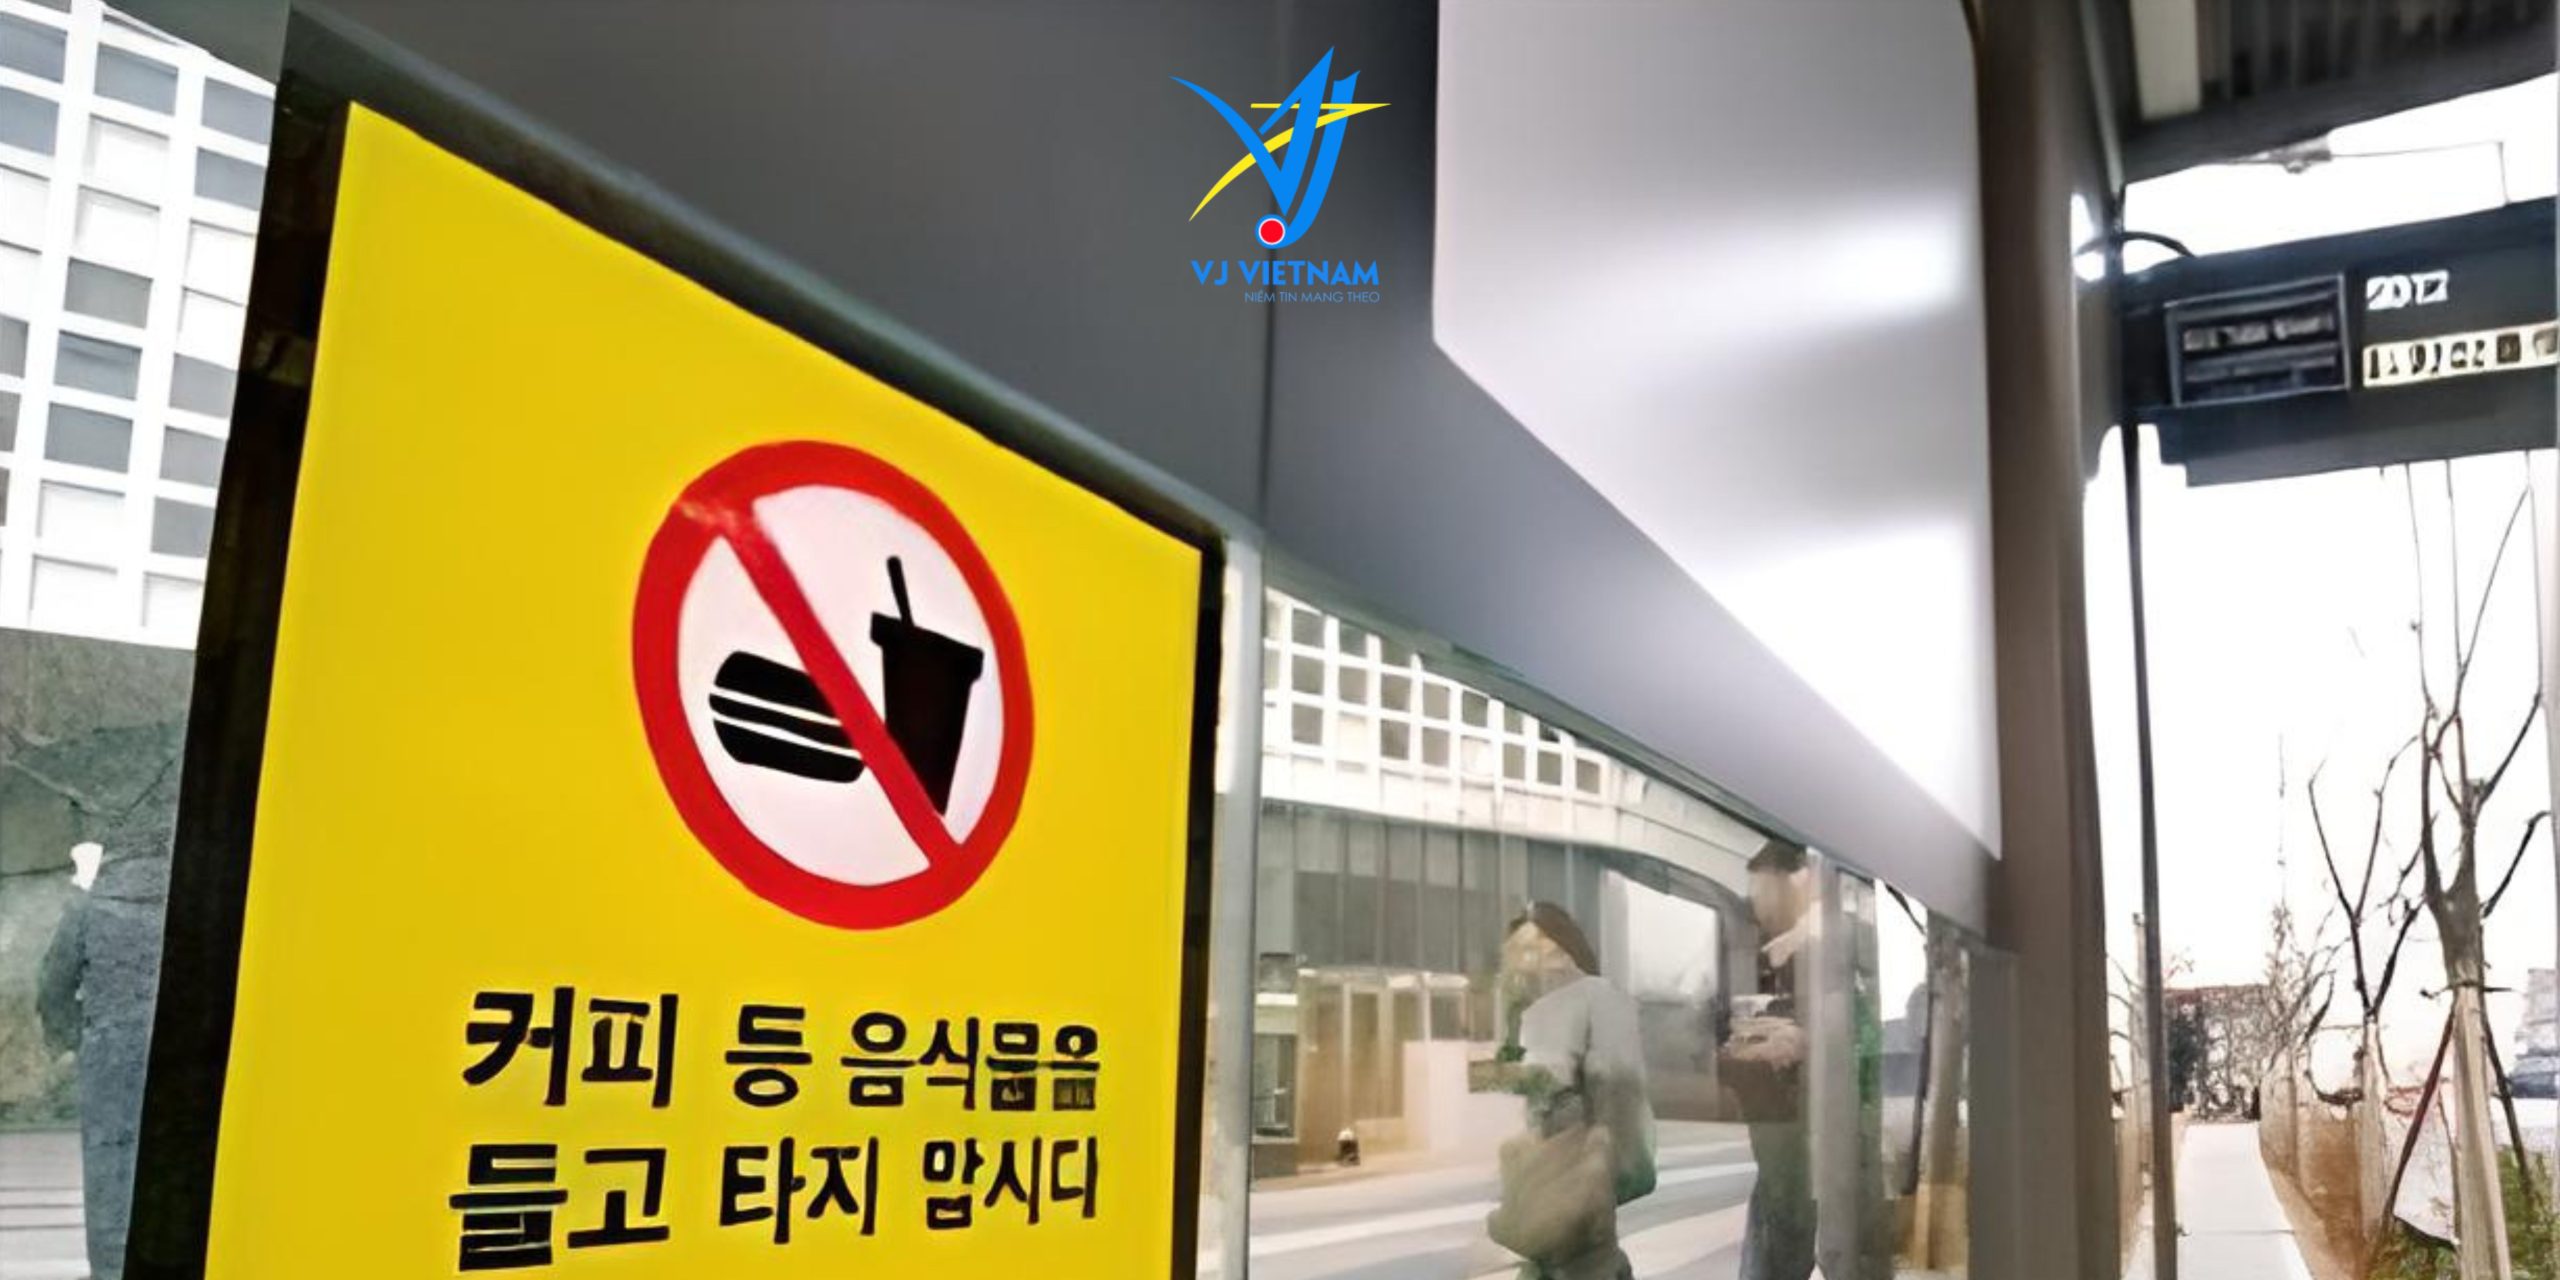 Biển báo cấm mang đồ ăn lên xe - giao thông Hàn Quốc